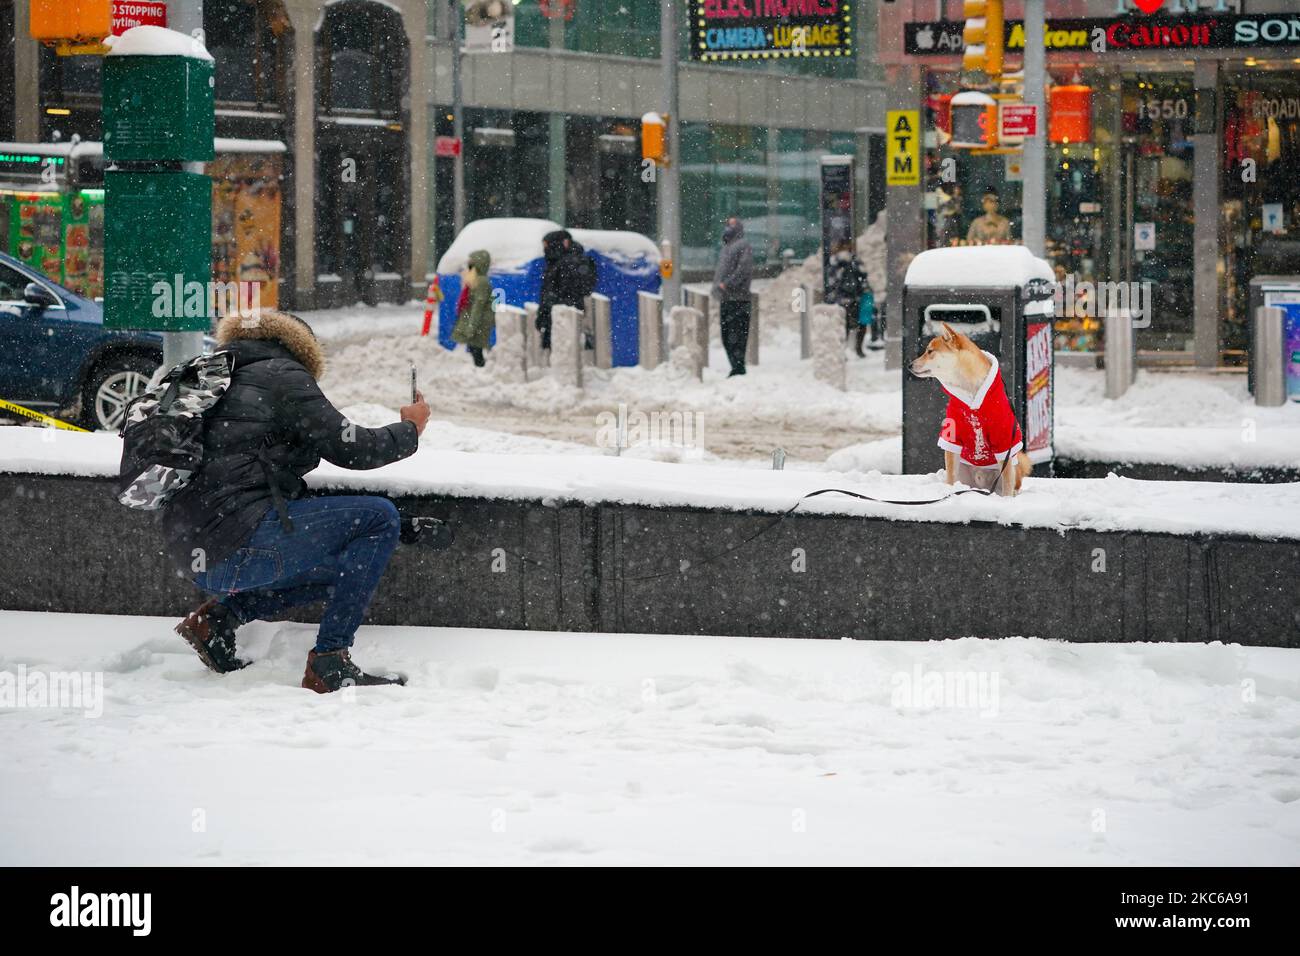 Una visión de una persona tomando una foto de su perro vestido con el traje  de Santa Claus en Times Square el 17 de diciembre de 2020 en Nueva York, la  mañana